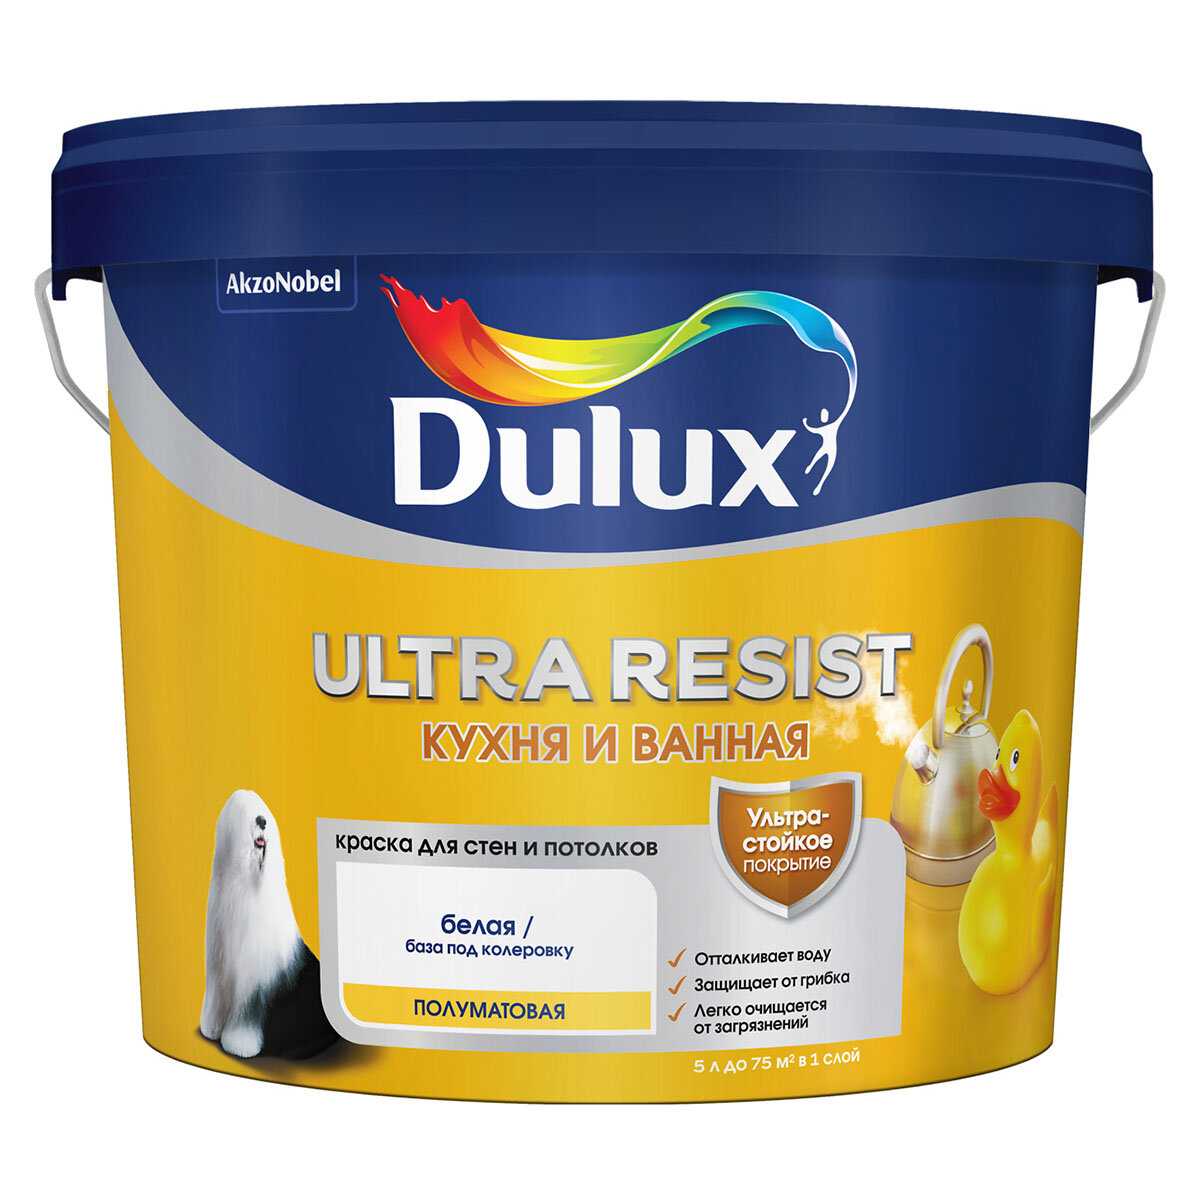 DULUX ULTRA RESIST кухня И ванная краска с защитой от плесени и грибка, полумат, база BW (5л)